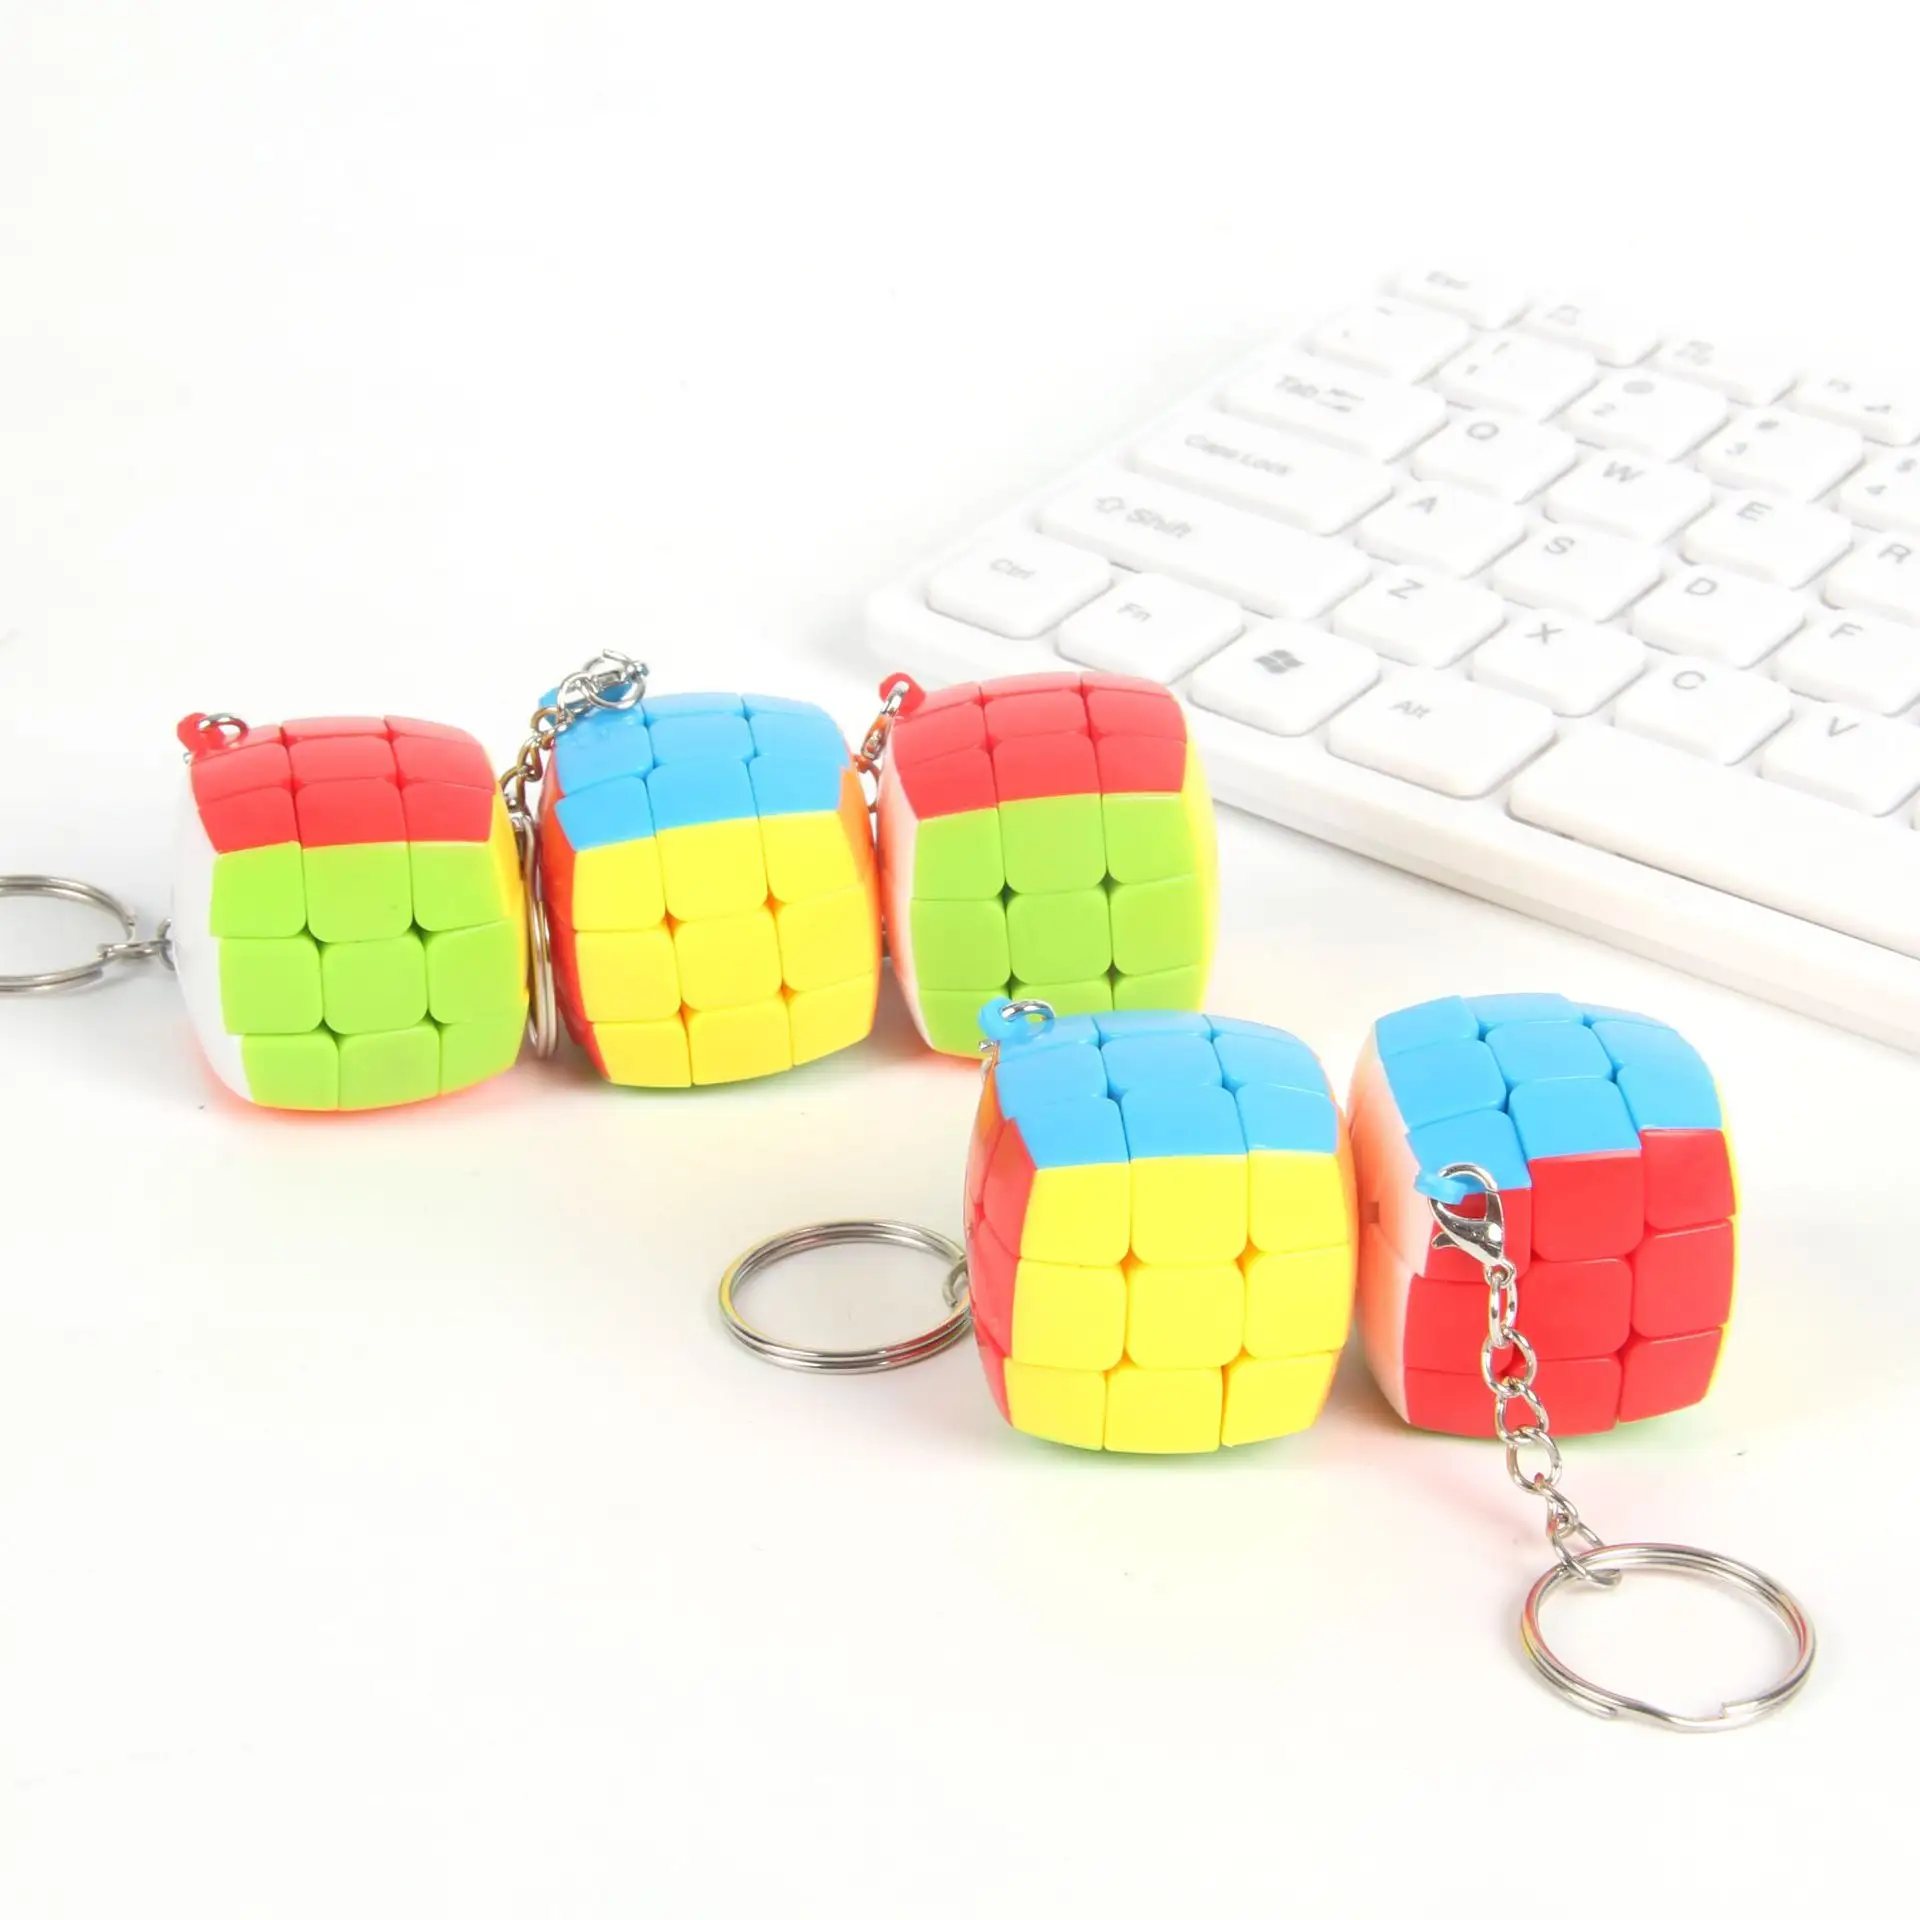 Vente en gros de poche mini taille 3x3cm Rubix Cube porte-clés petite taille en plastique Fidget jouet Cube magique pour enfants adultes